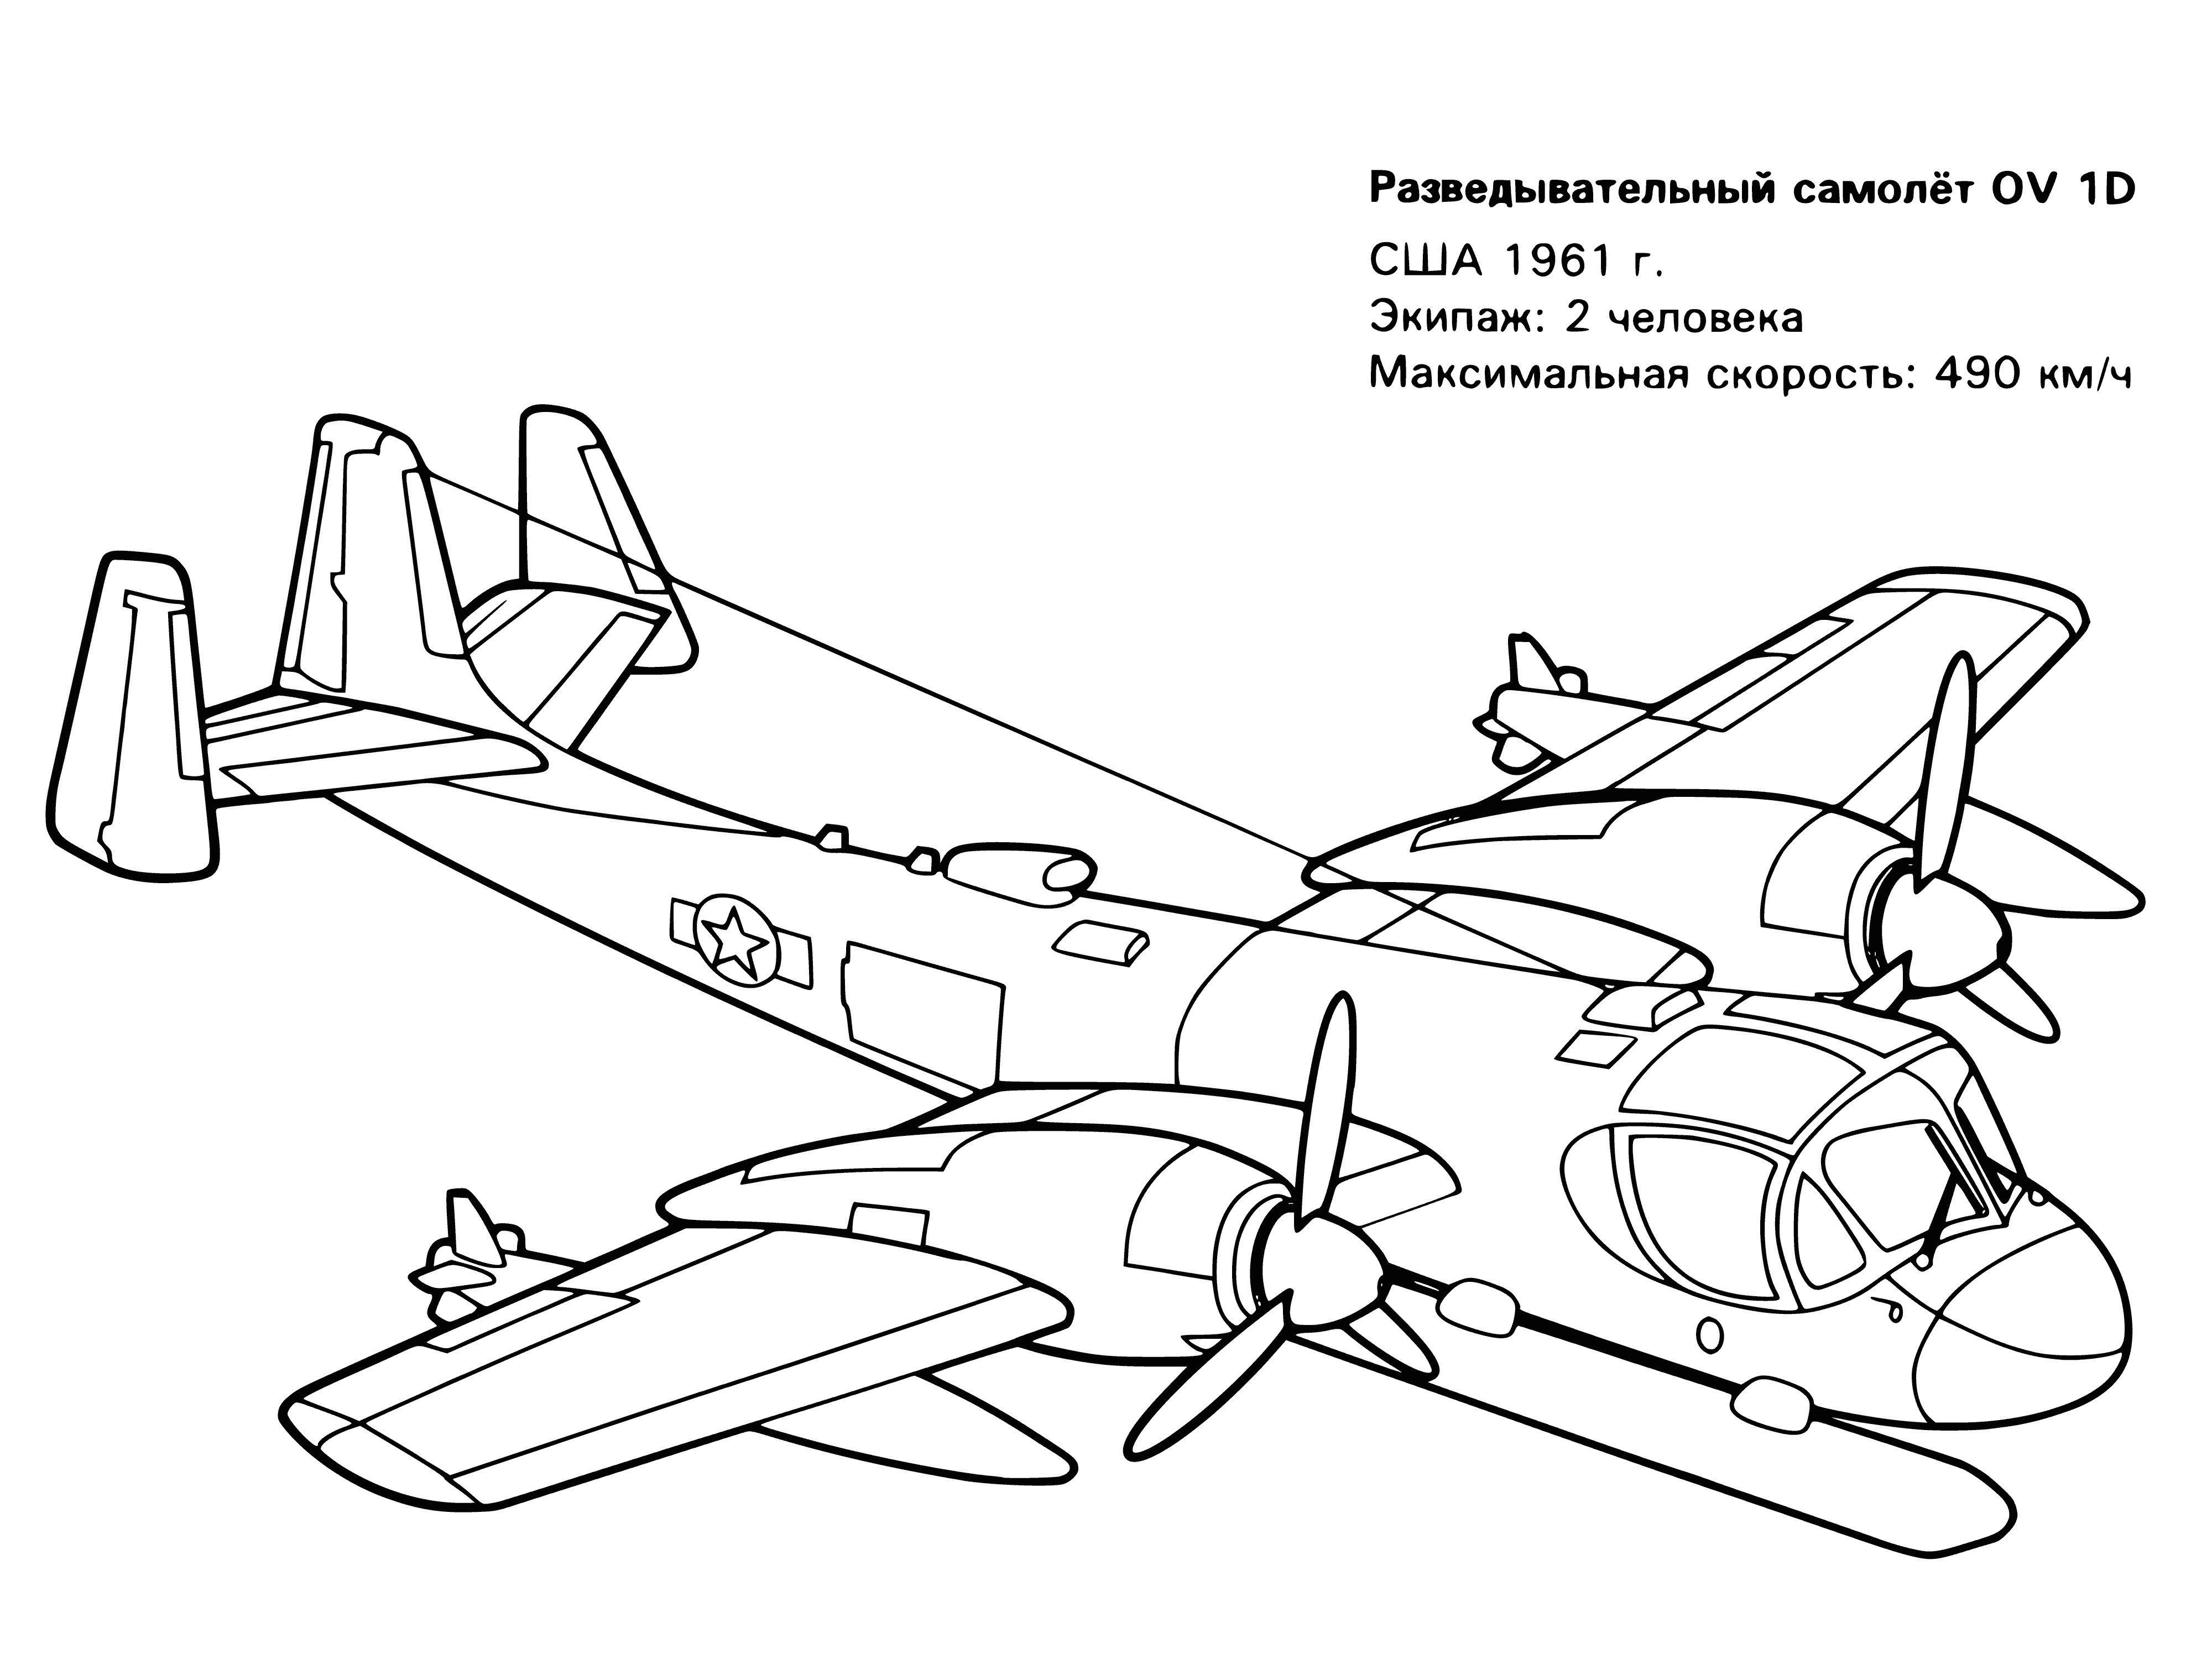 Avion de reconnaissance américain 1961 coloriage